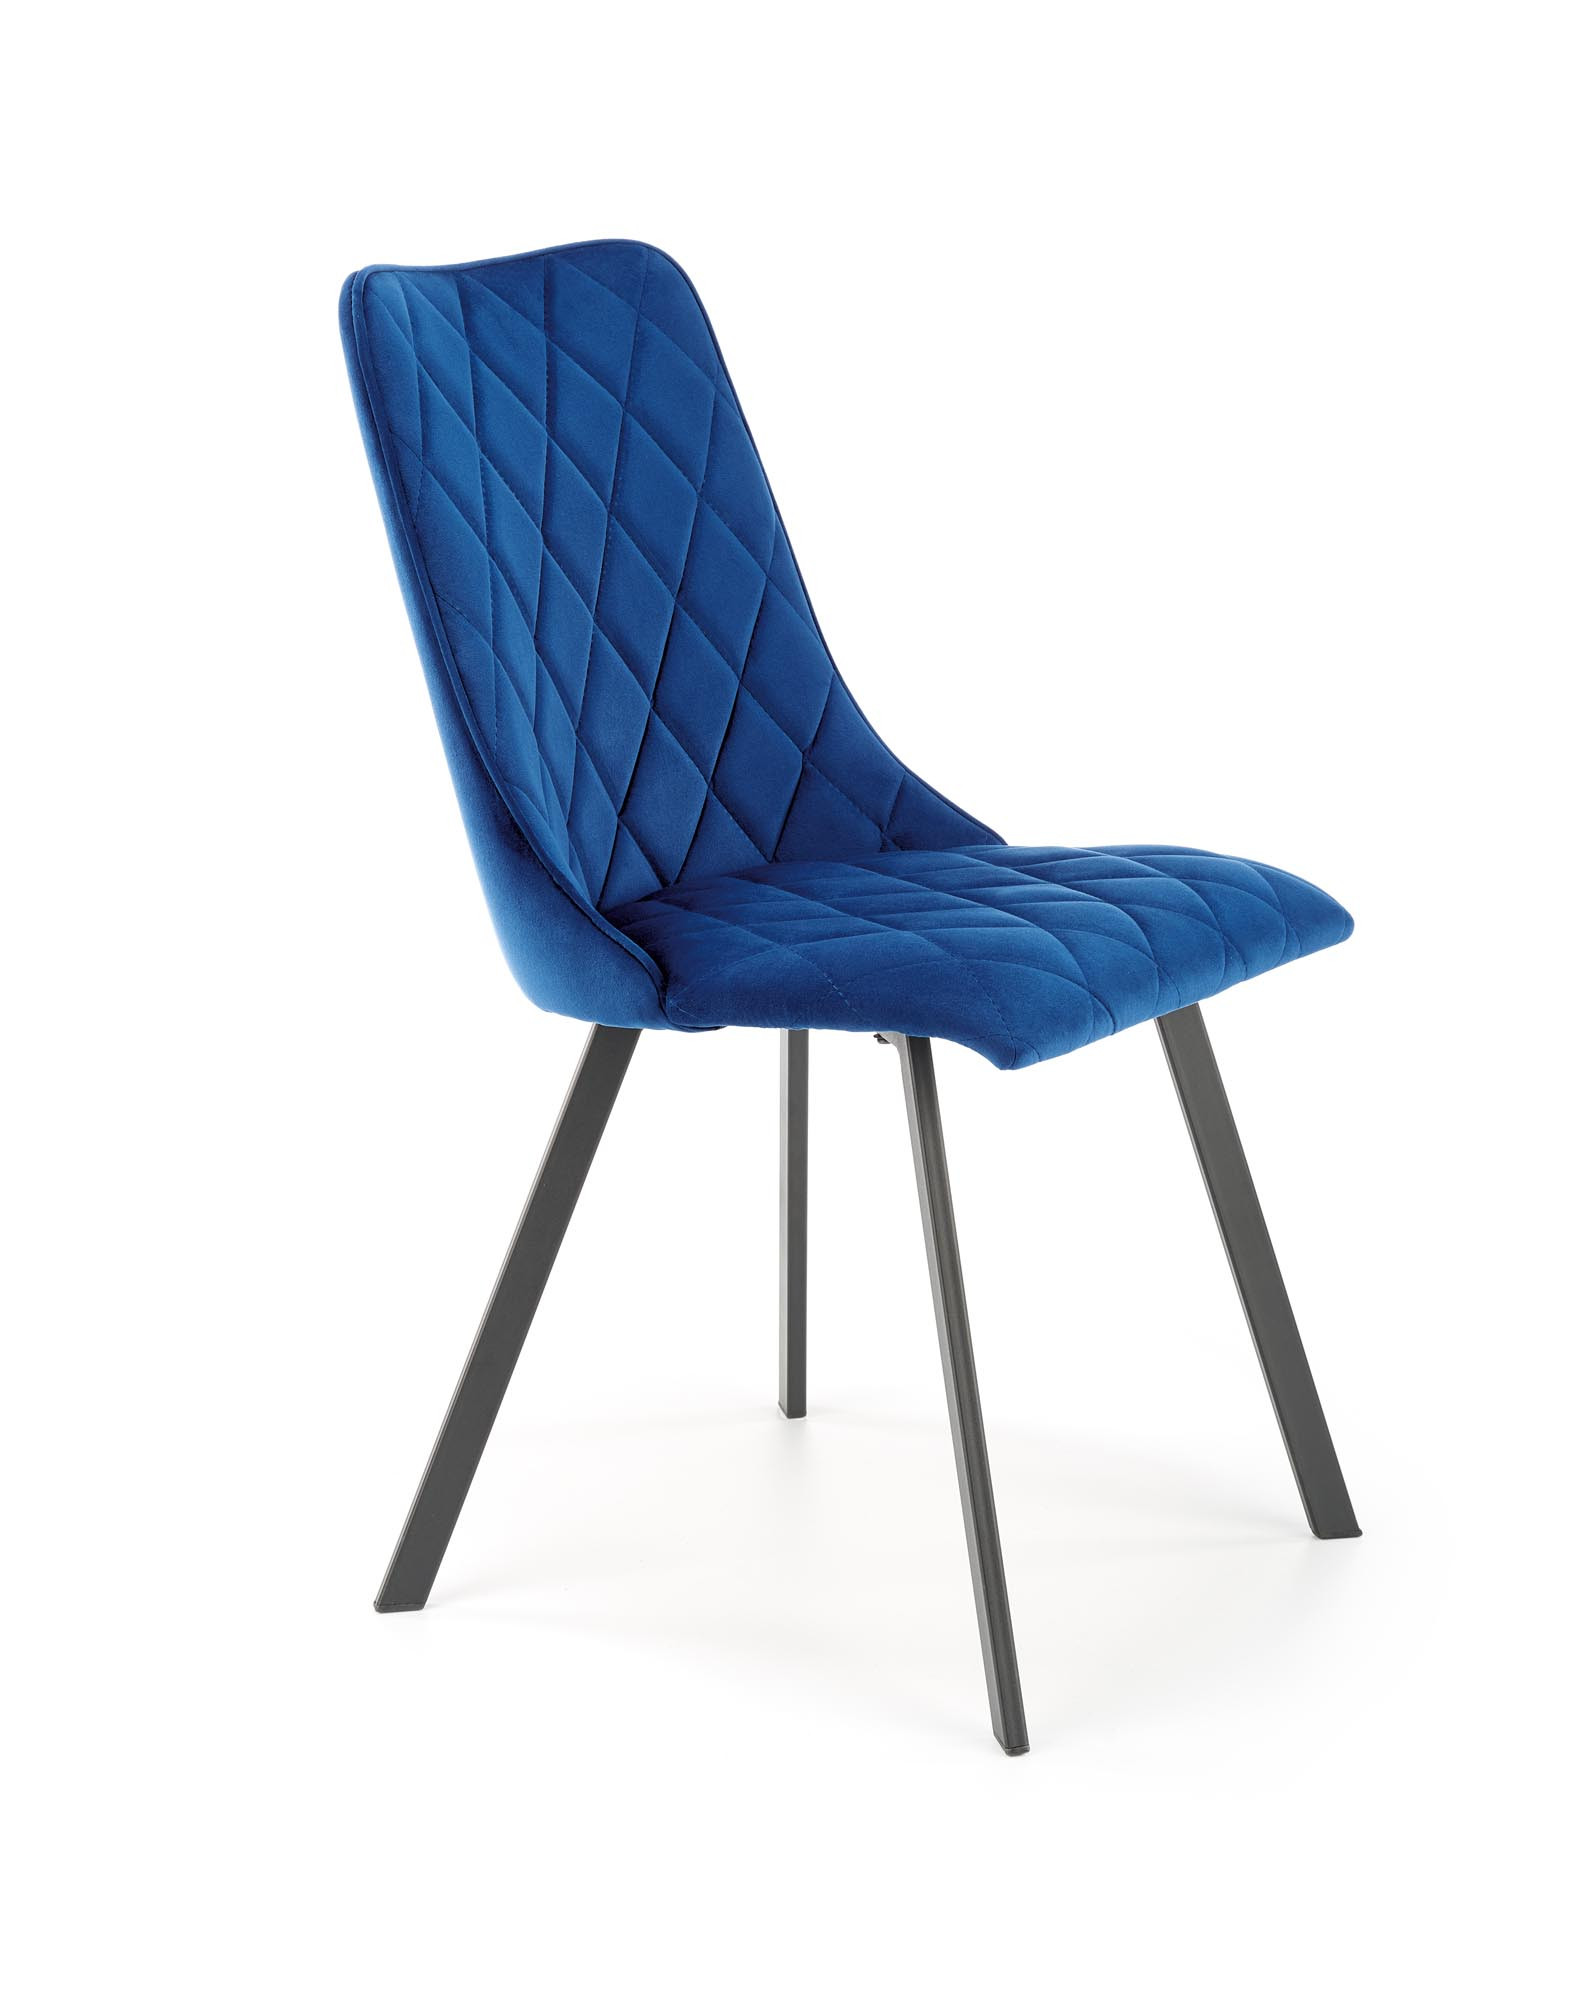 Set 6 scaune K450 albastru